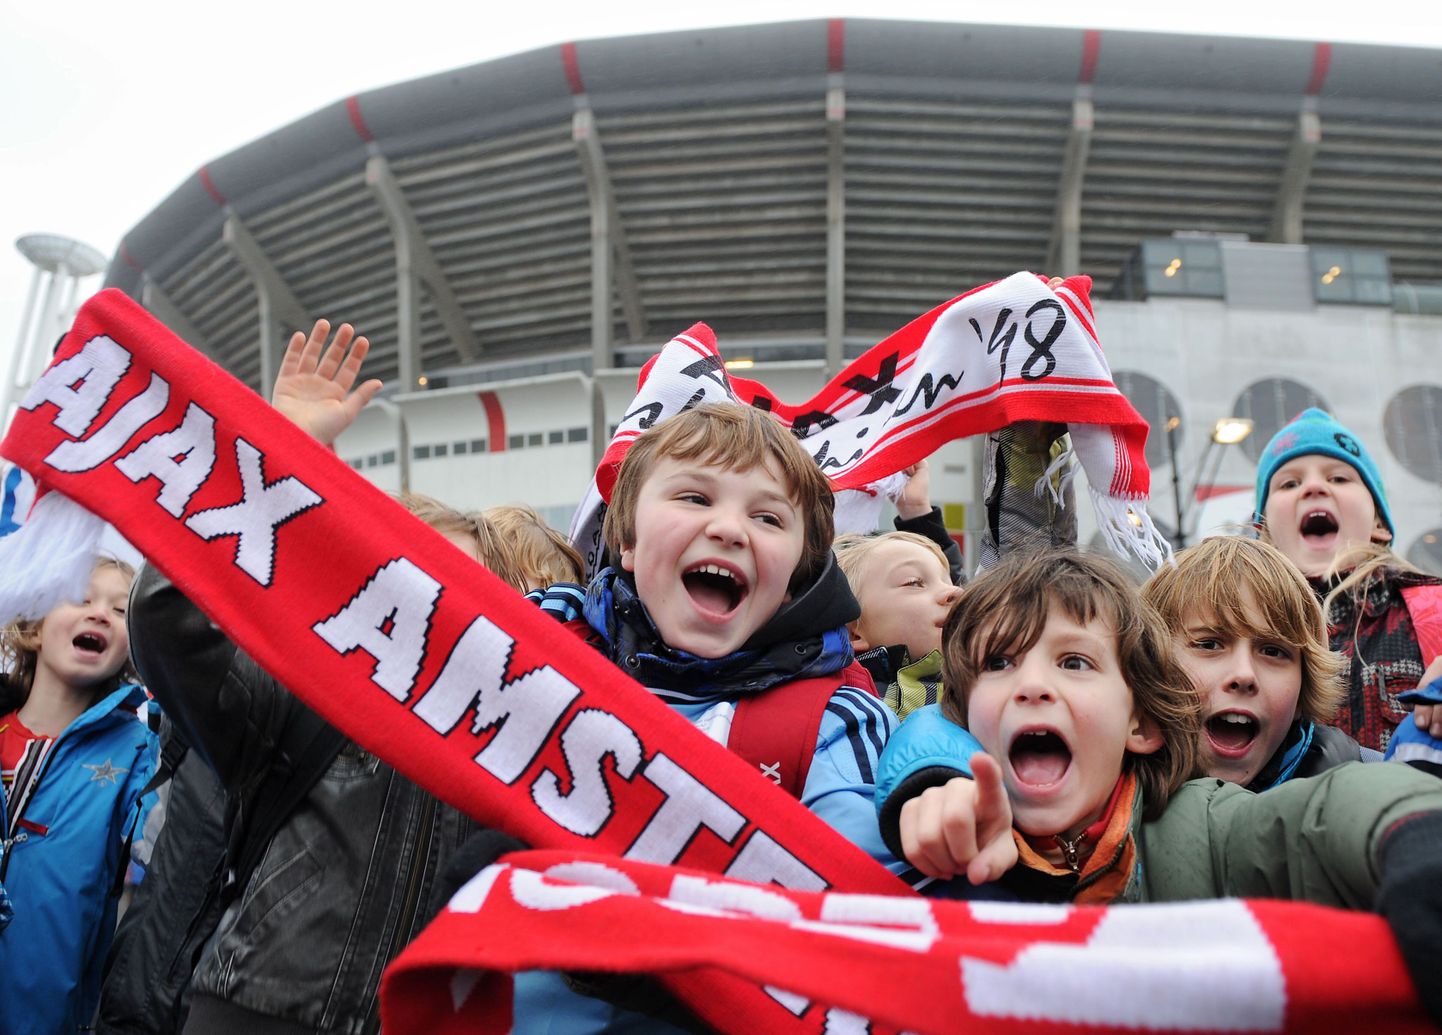 Amsterdami Ajaxi noored fännid enne mängu AZ alkmaariga.